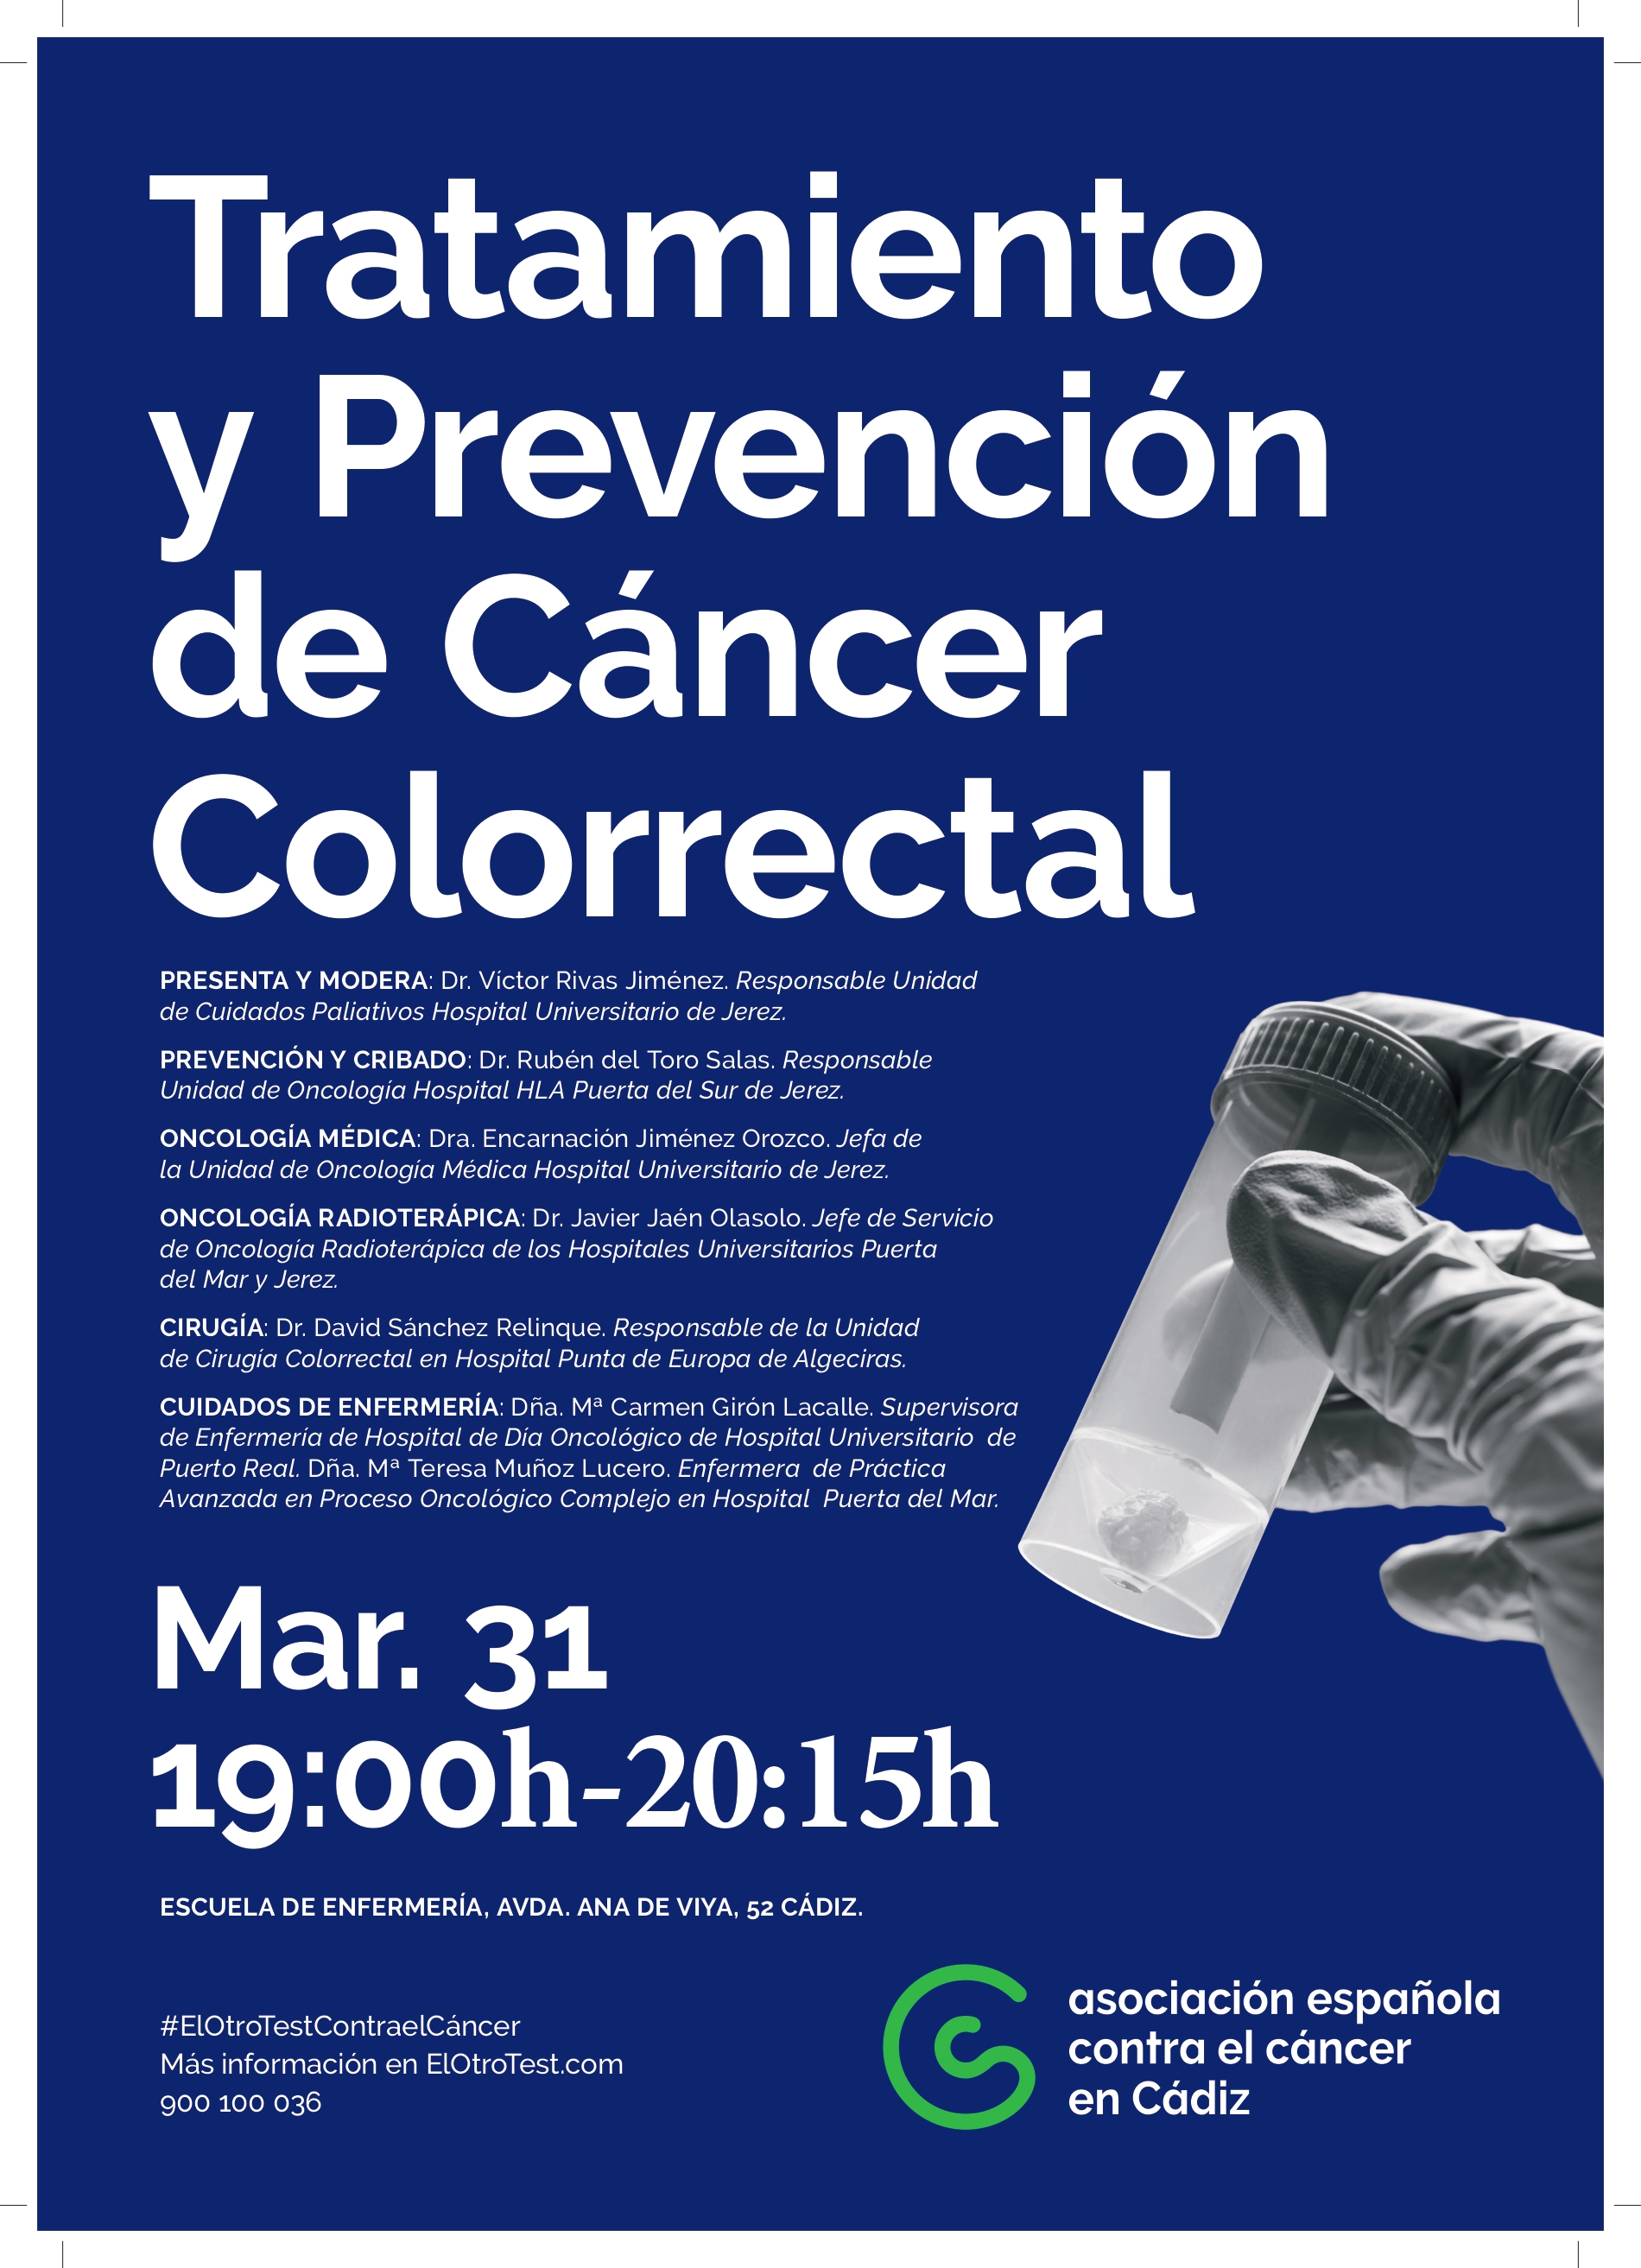 Tratamiento Y Prevención Del Cáncer Colorrectal Hospital Universitario Puerta Del Mar